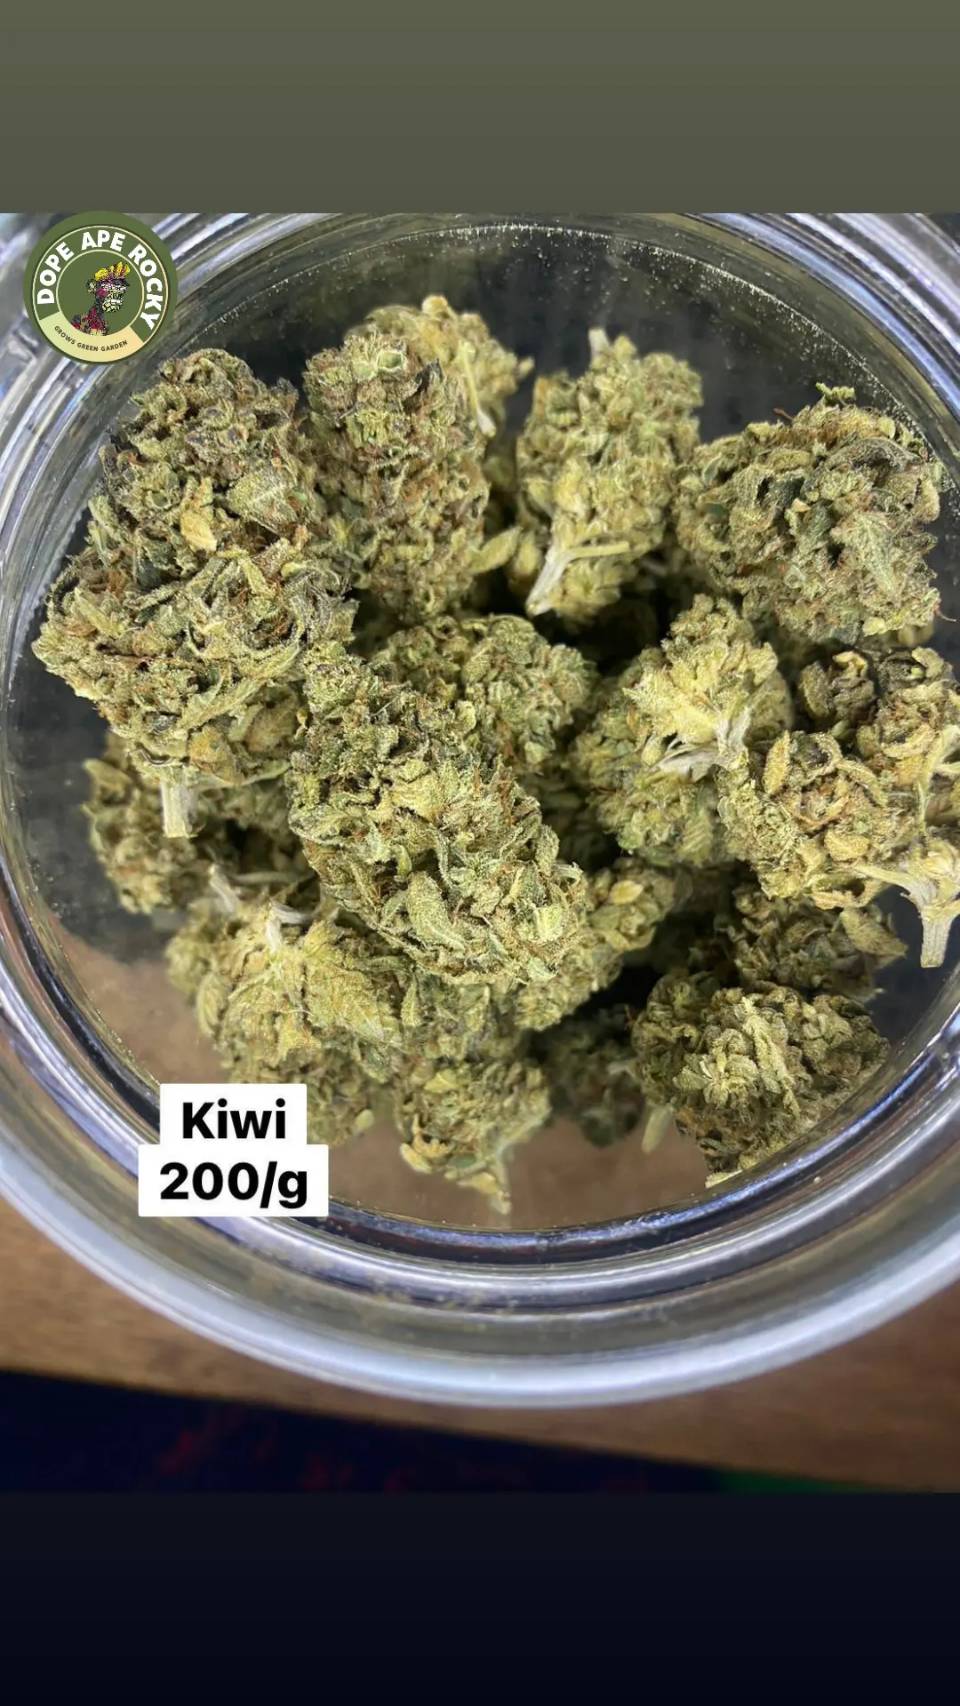 Product Image for Kiwi